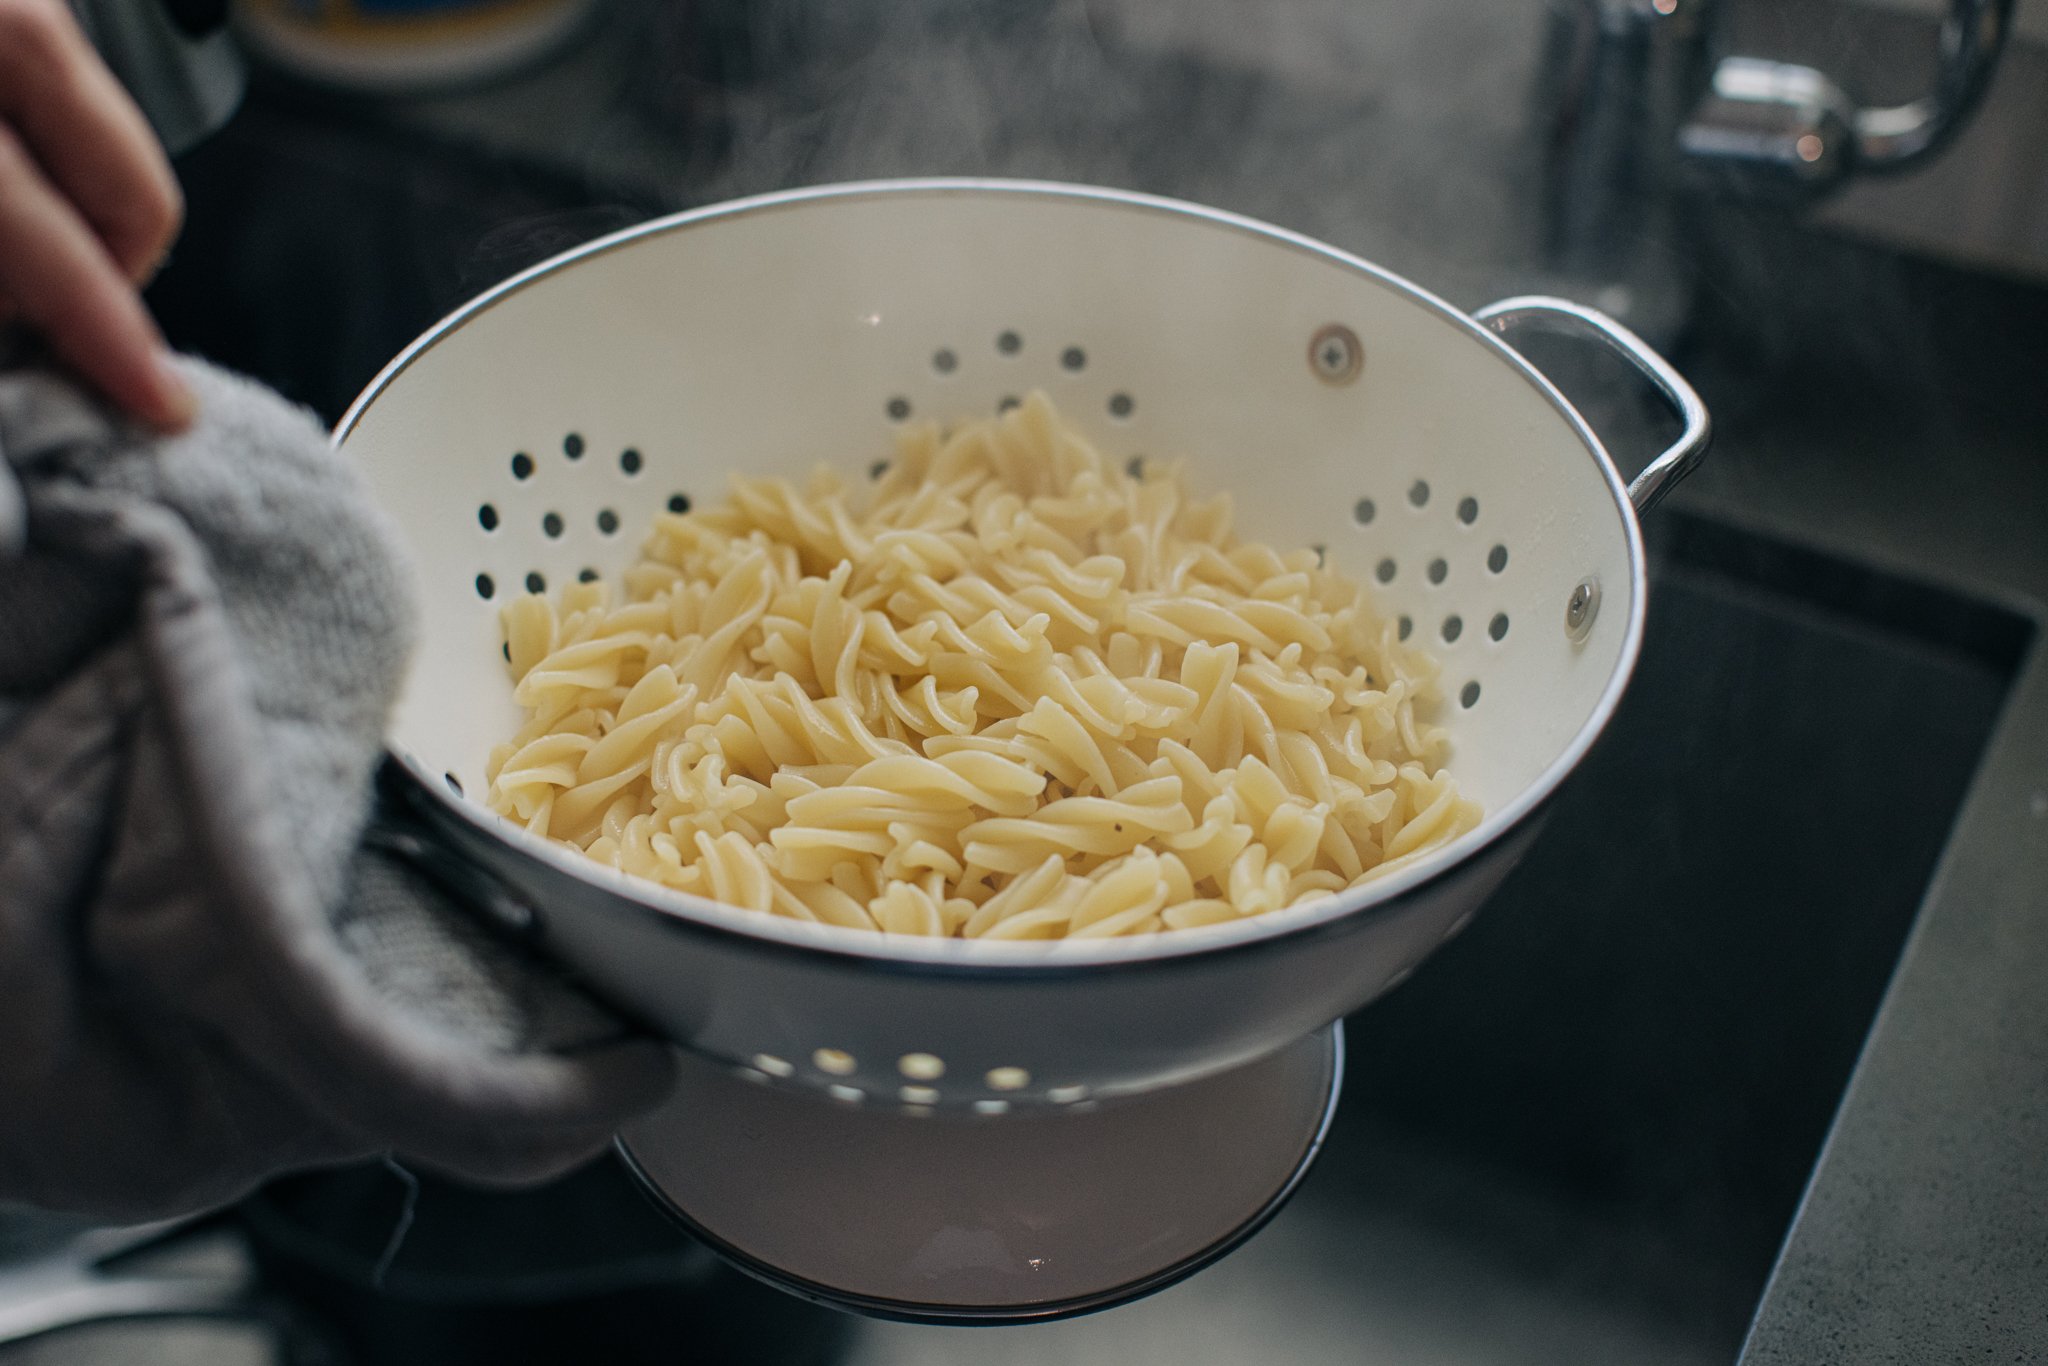 tiktok-viral-pasta-chips-recipe-3.jpg